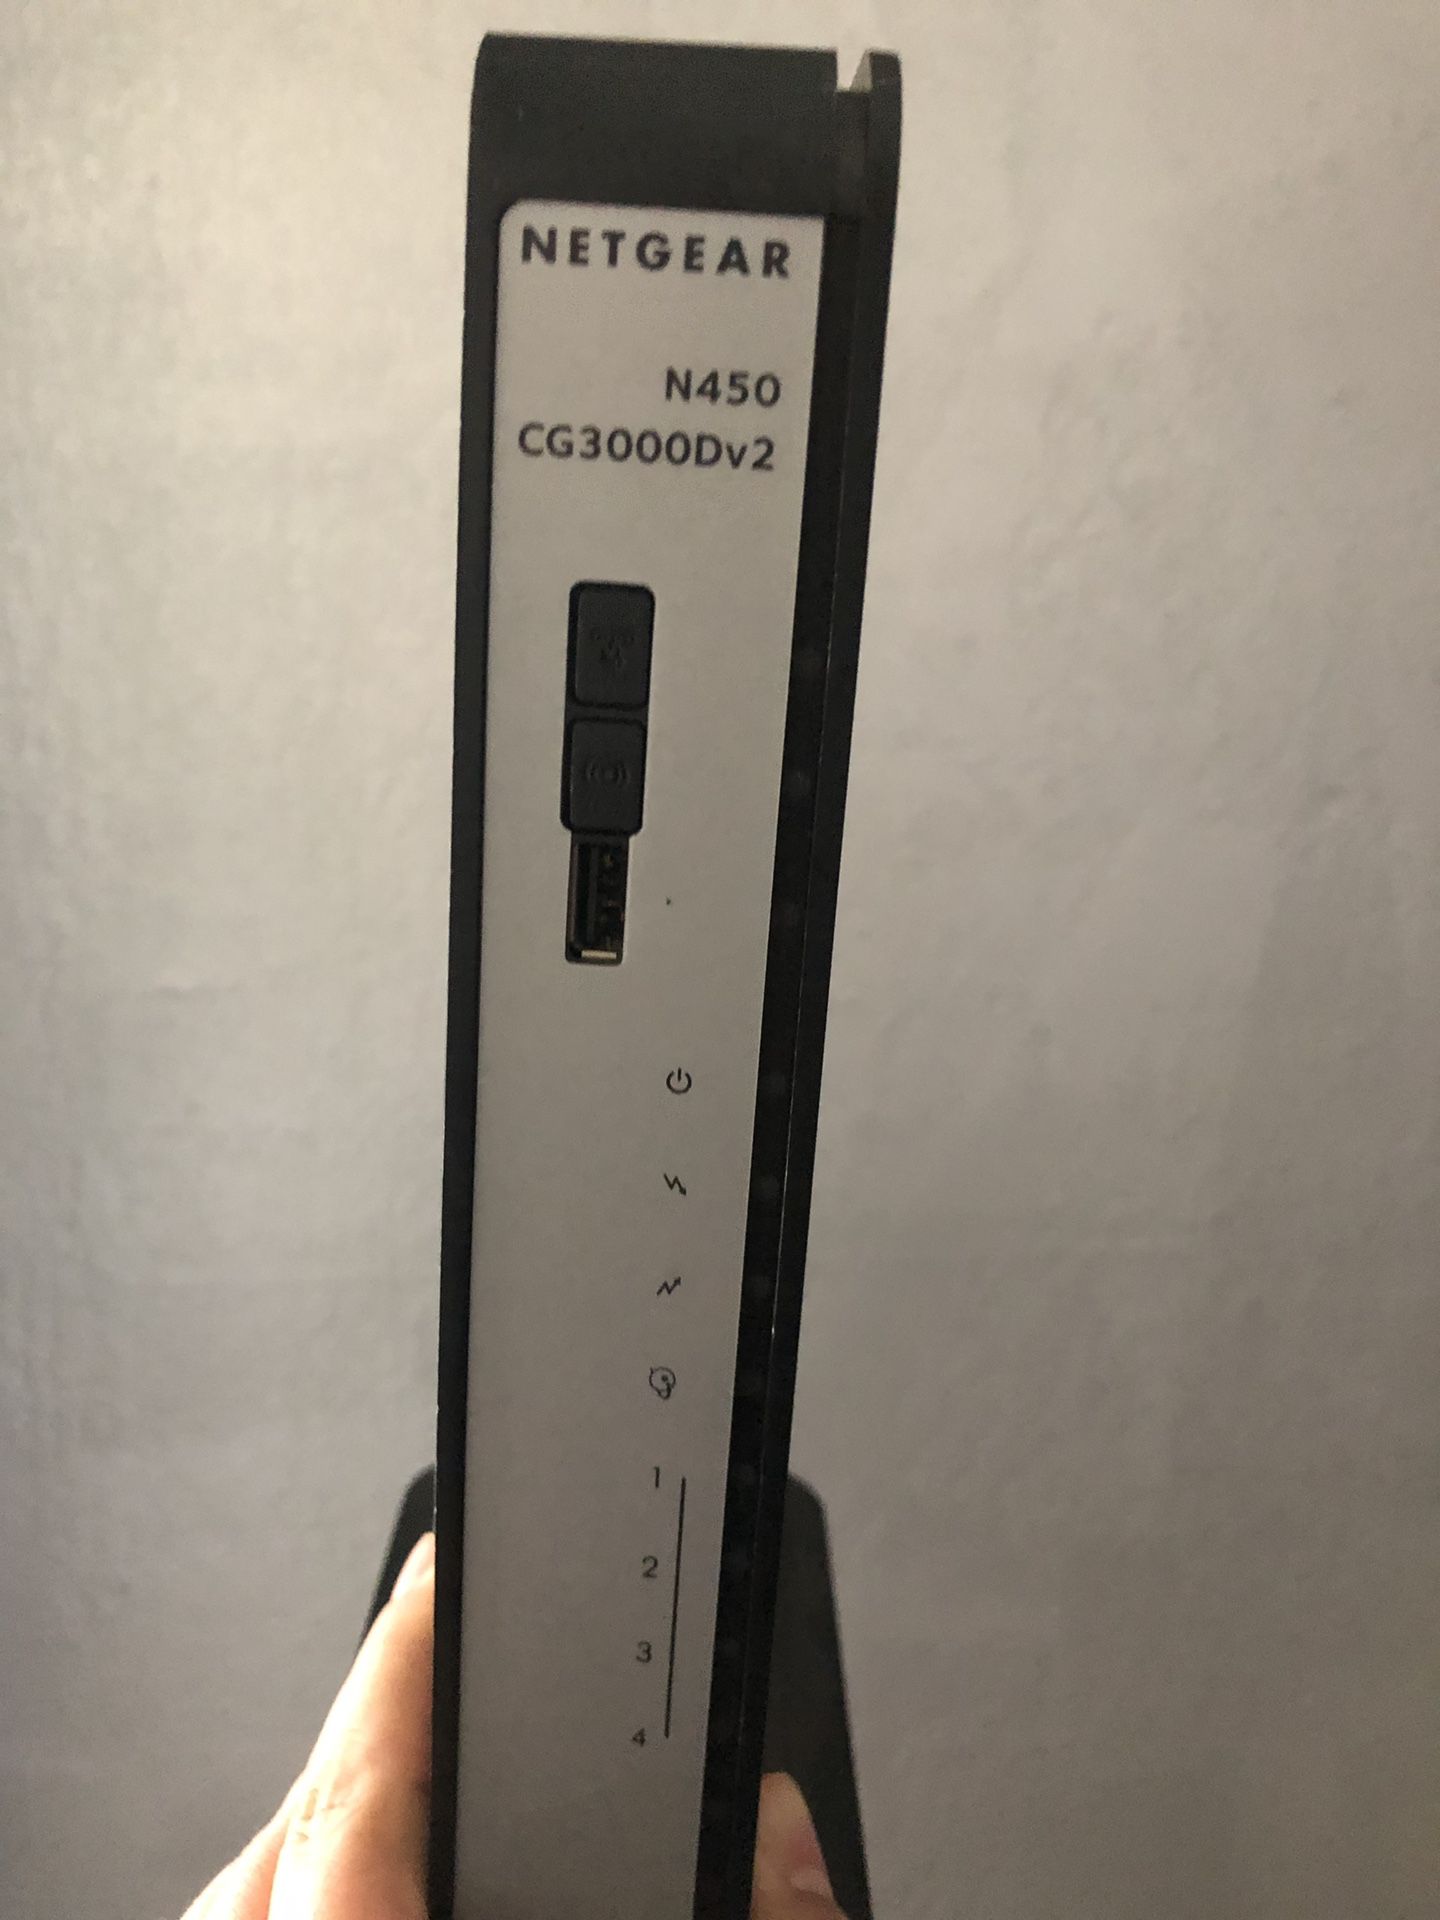 Netgear N450 WiFi modem